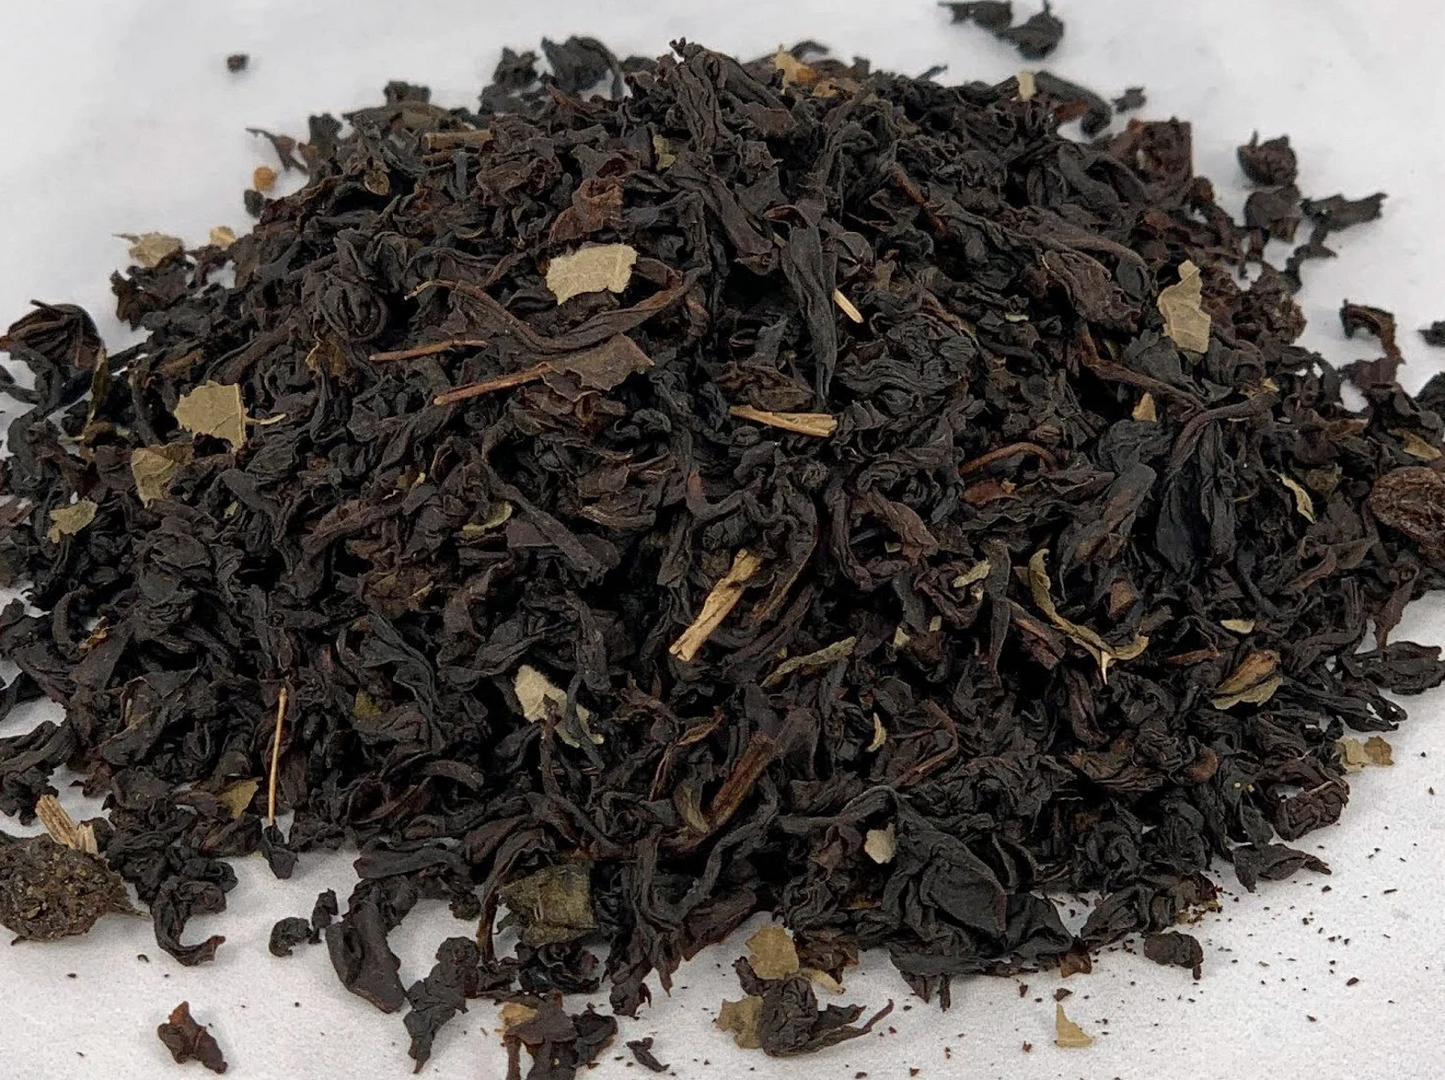 Black Currant Tea (Loose Leaf)